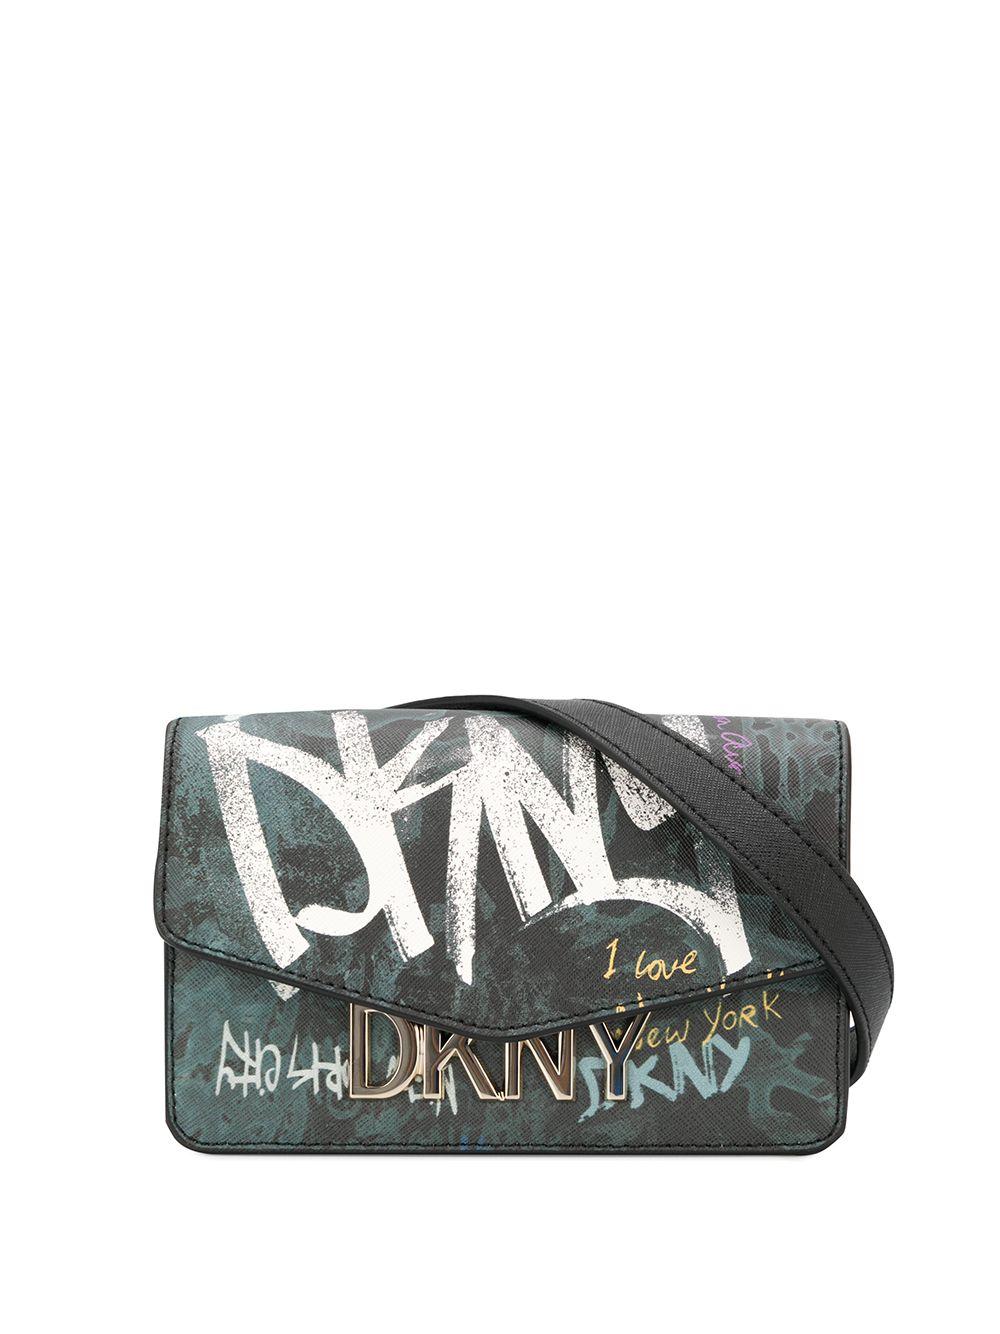 DKNY Graffiti Logo Cross-body Bag